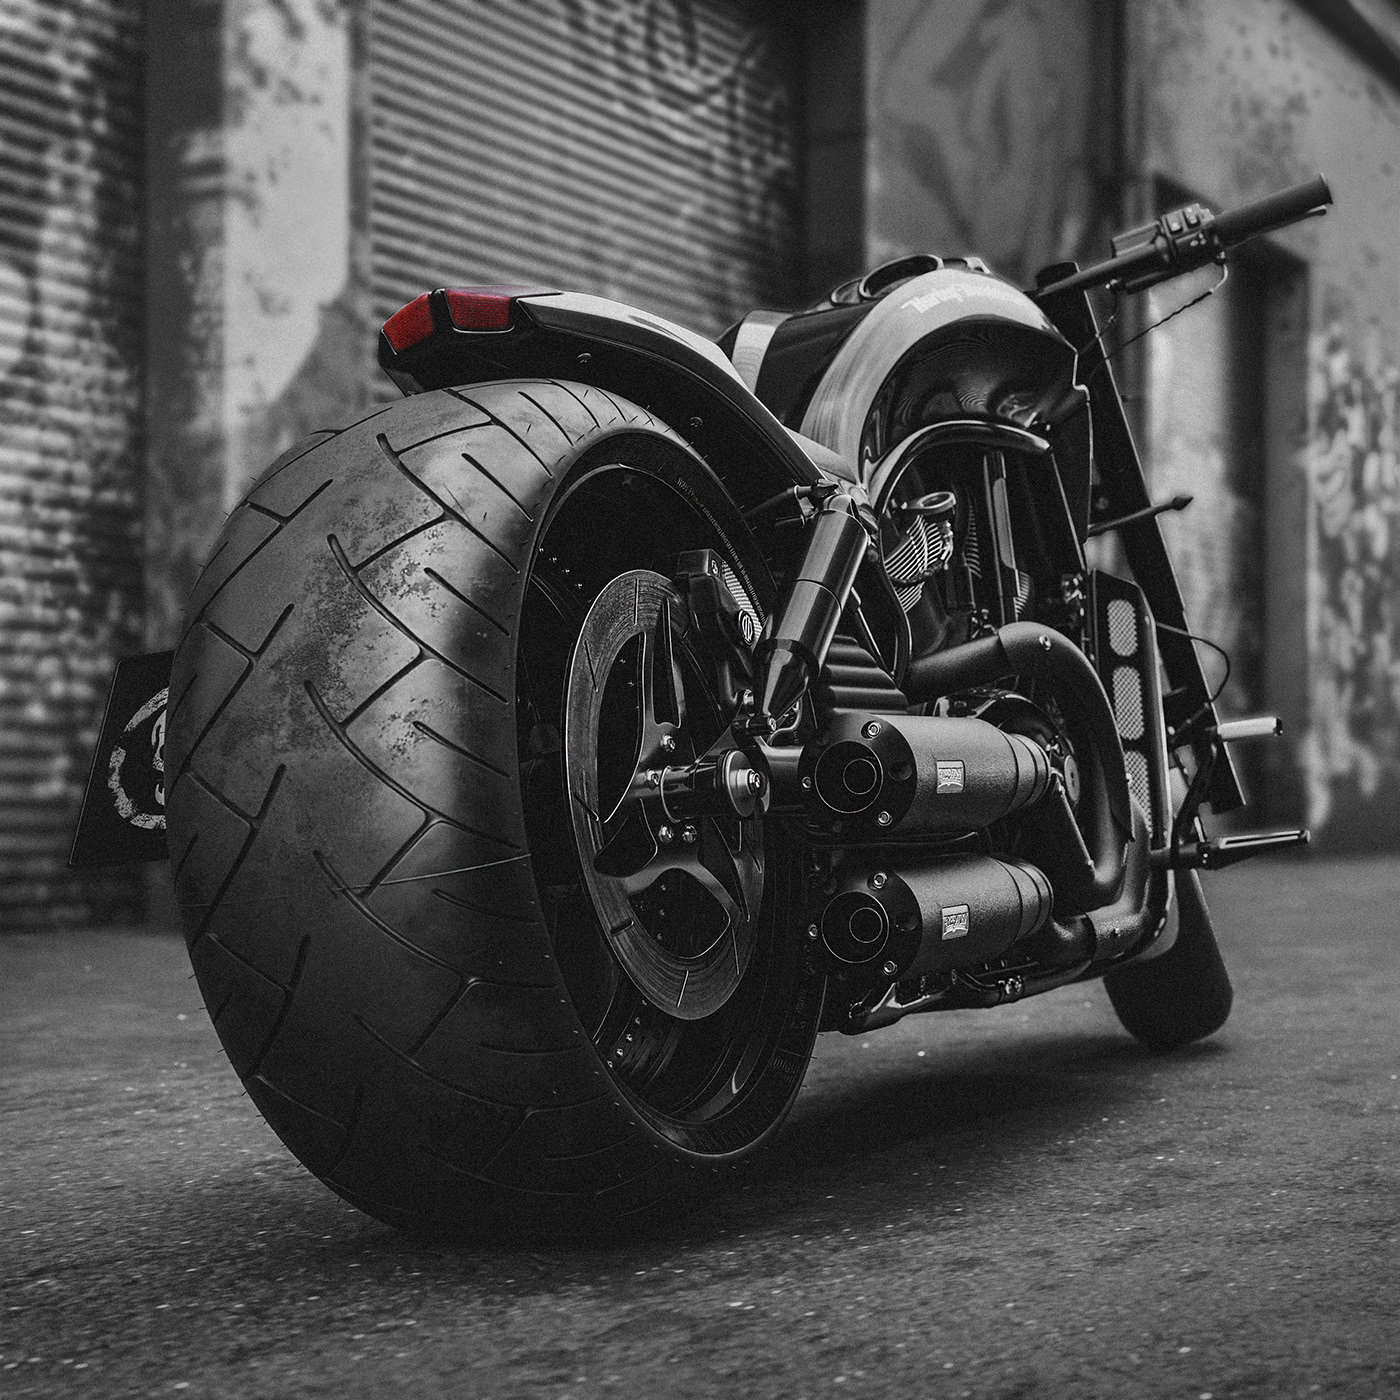 Harley Davidson CGI 3D automotive   Vehicle motorcycle blender model Render Vizualization